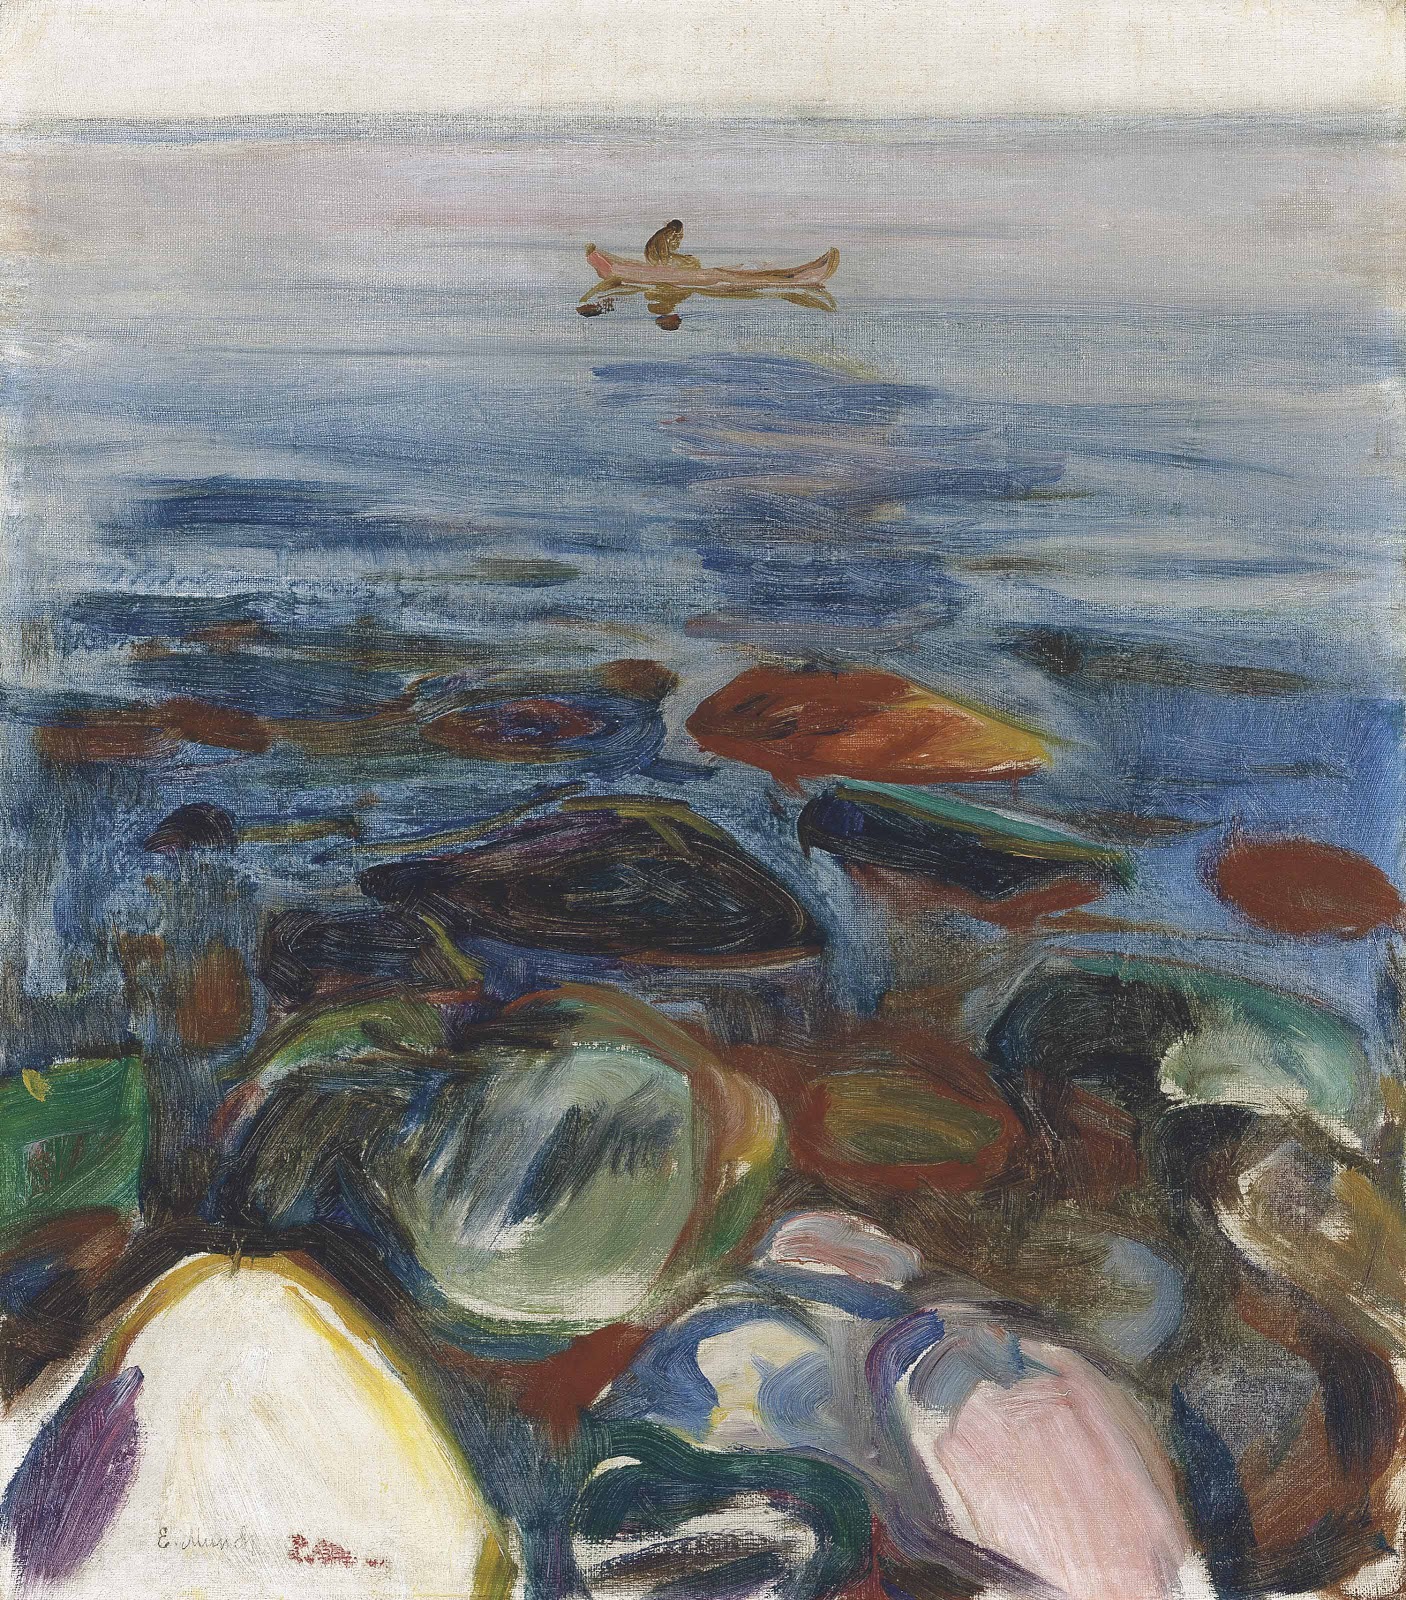 Edvard+Munch-1863-1944 (38).jpg